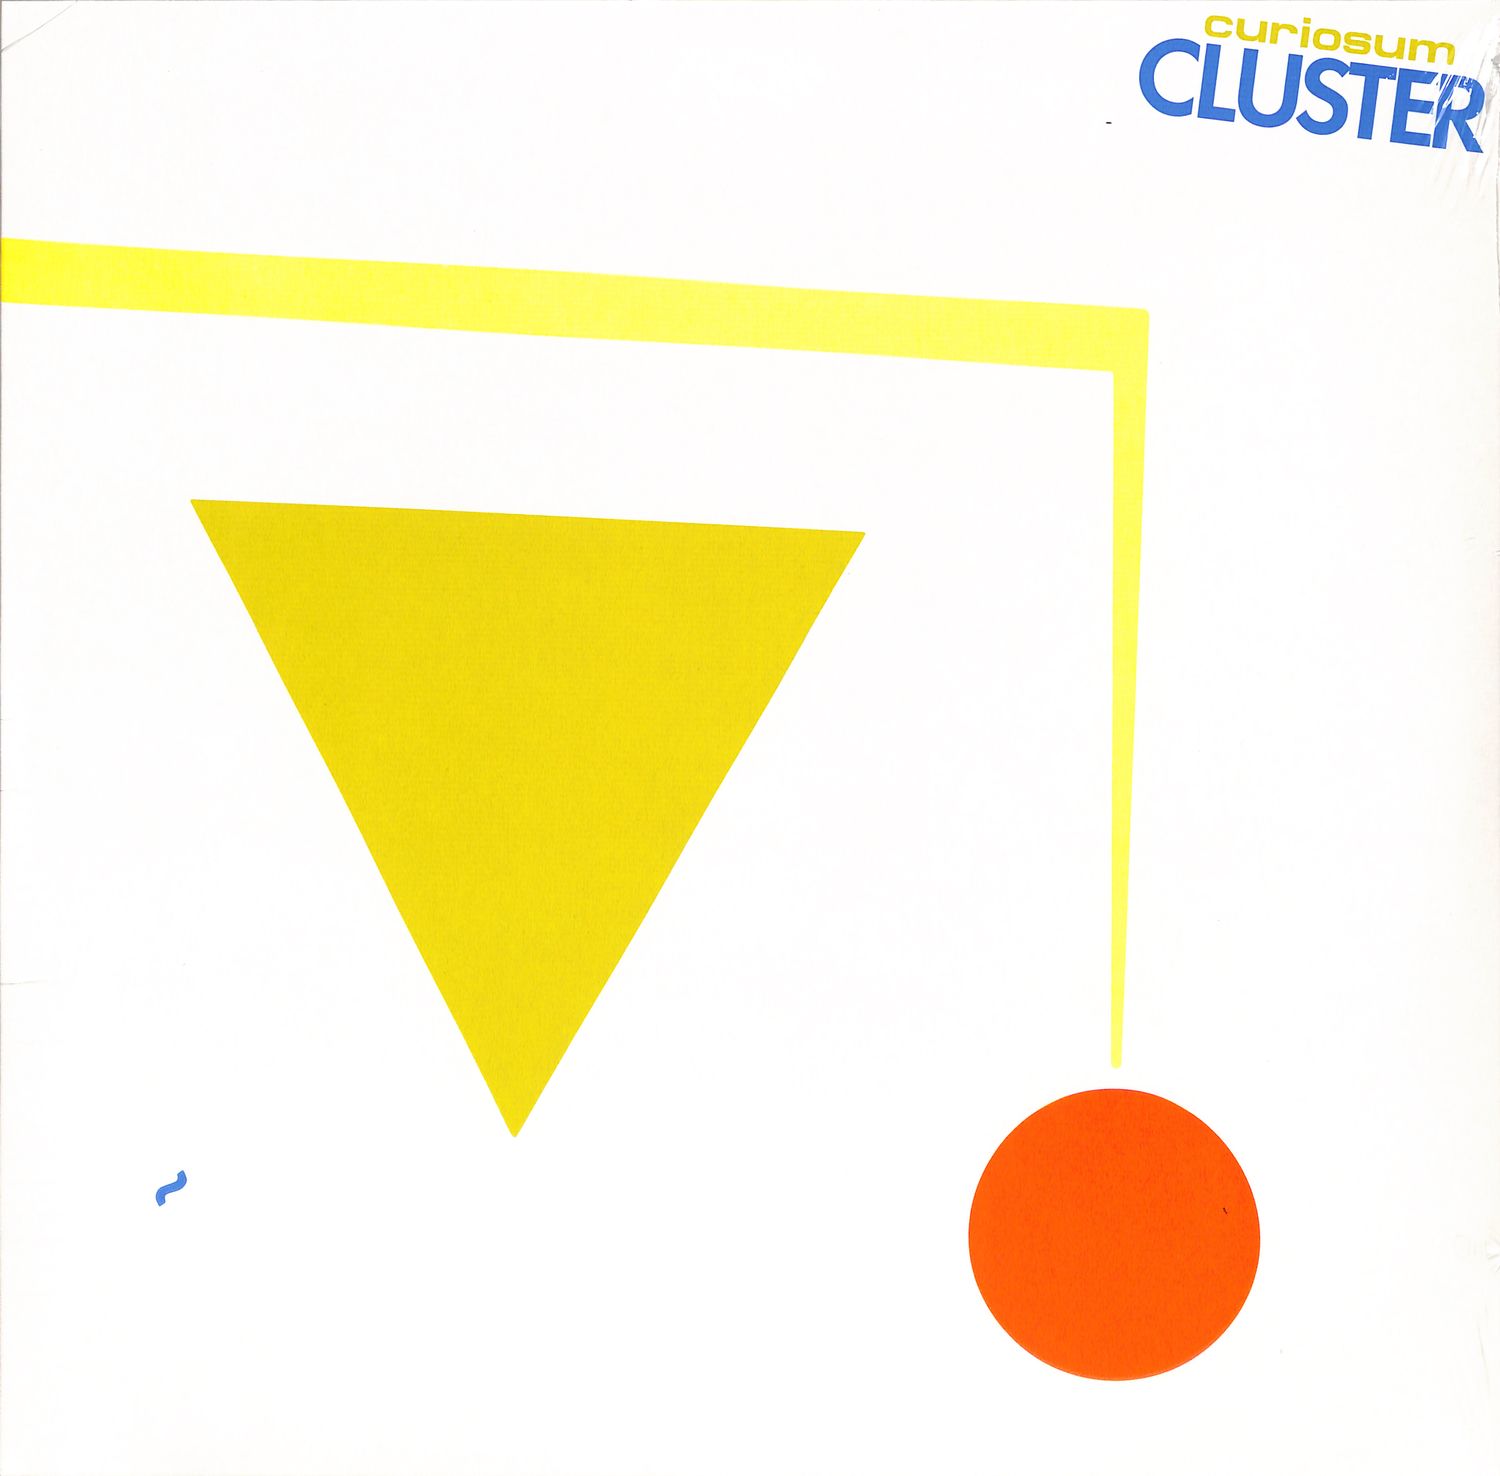 Cluster - CURIOSUM 